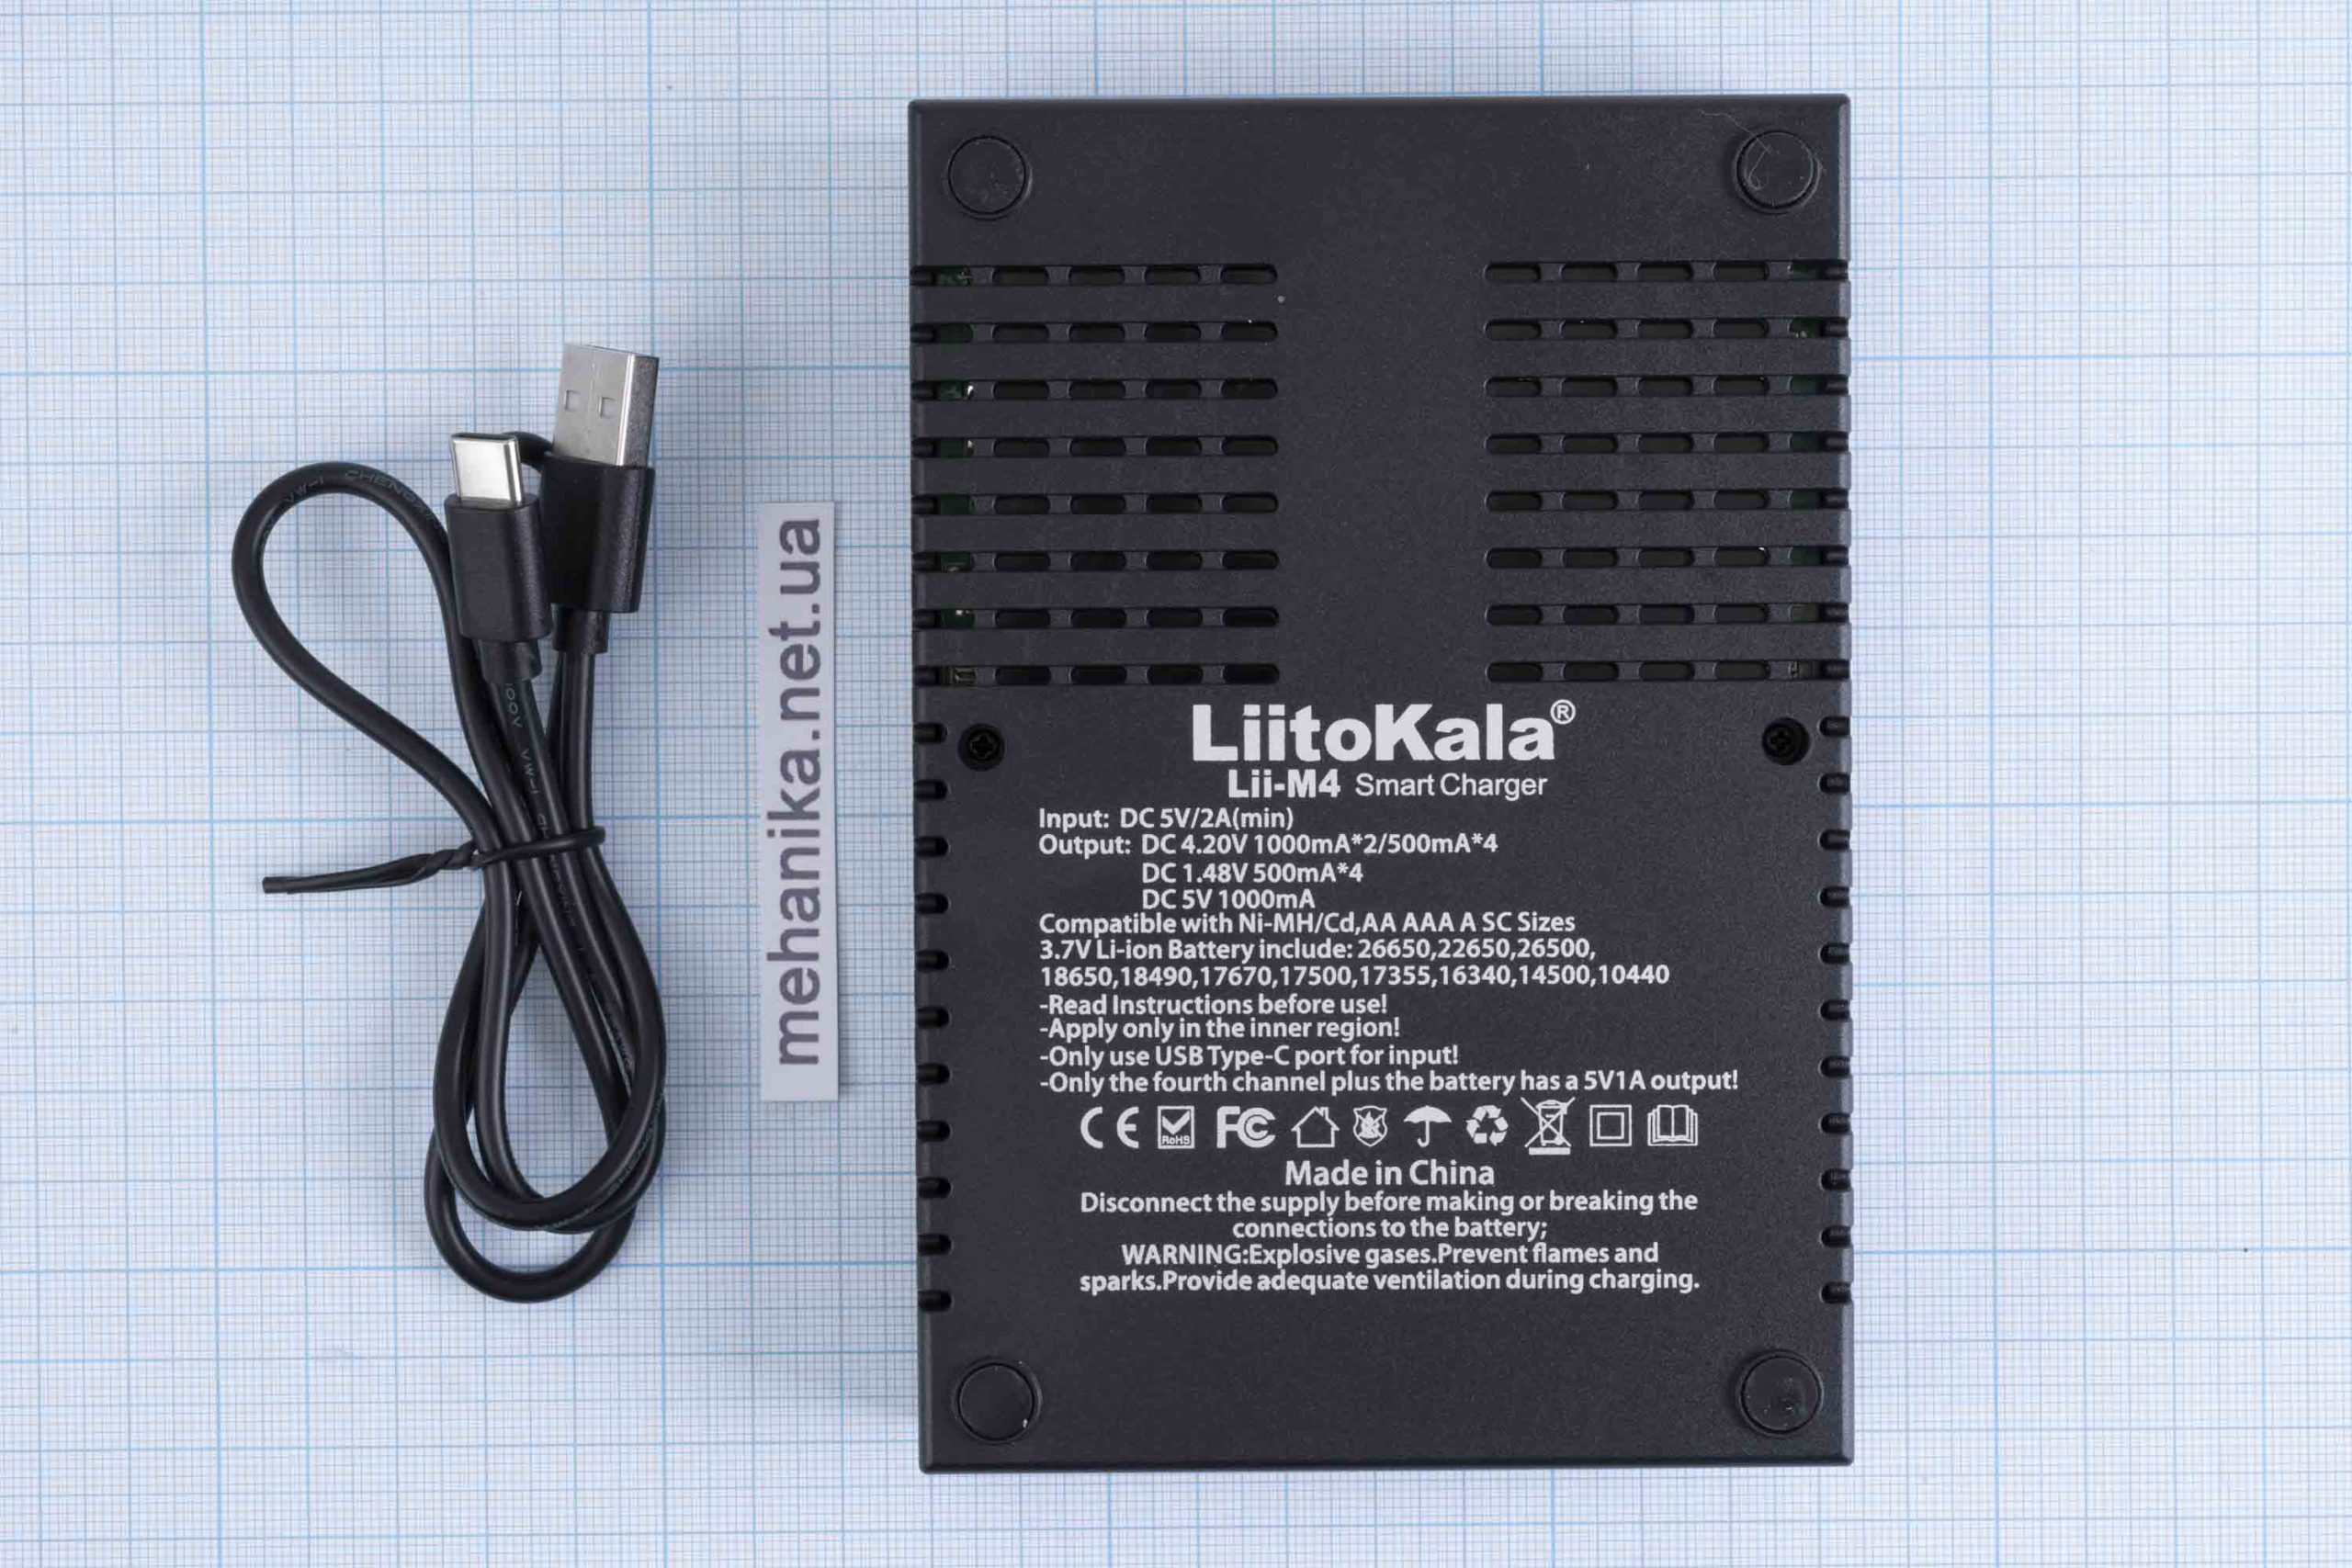  Інтелектуальний зарядний пристрій LiitoKala Lii-M4 для акумуляторів 18650 з функцією PowerBank